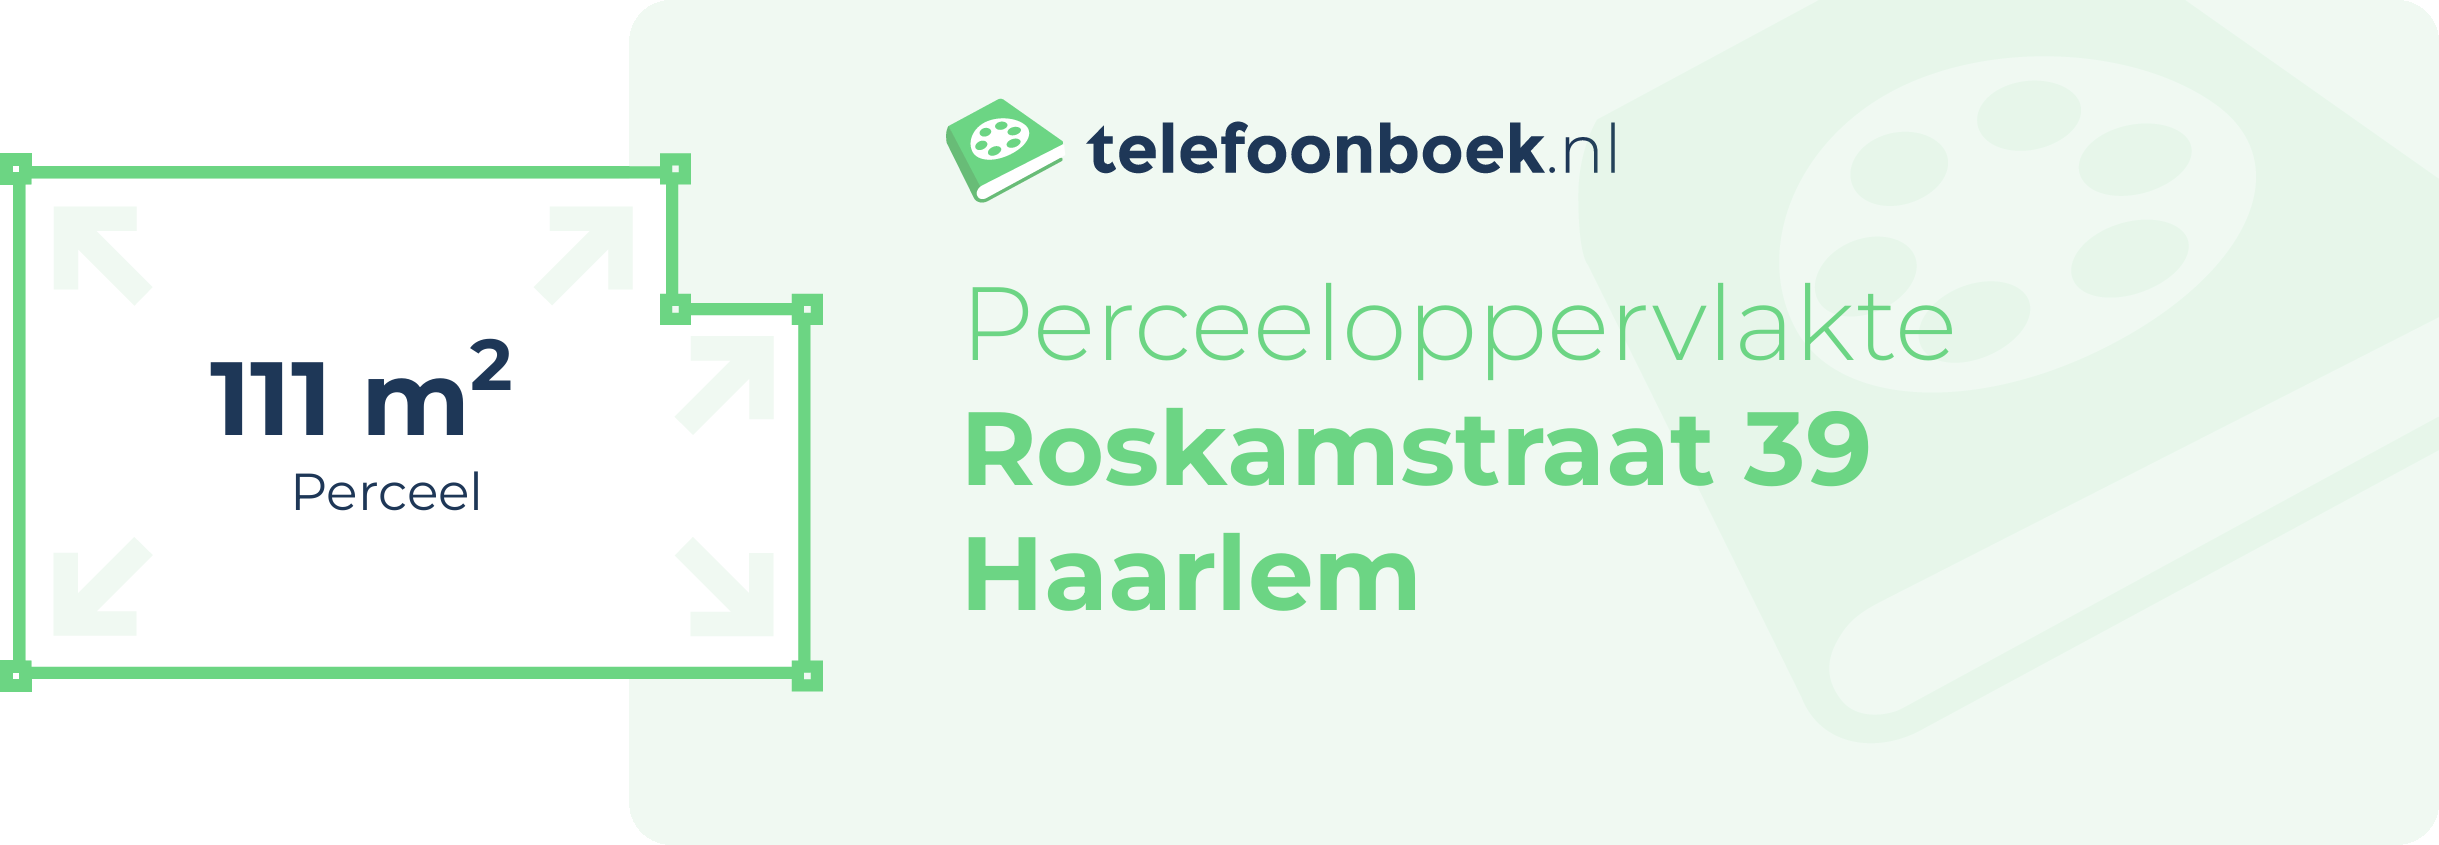 Perceeloppervlakte Roskamstraat 39 Haarlem